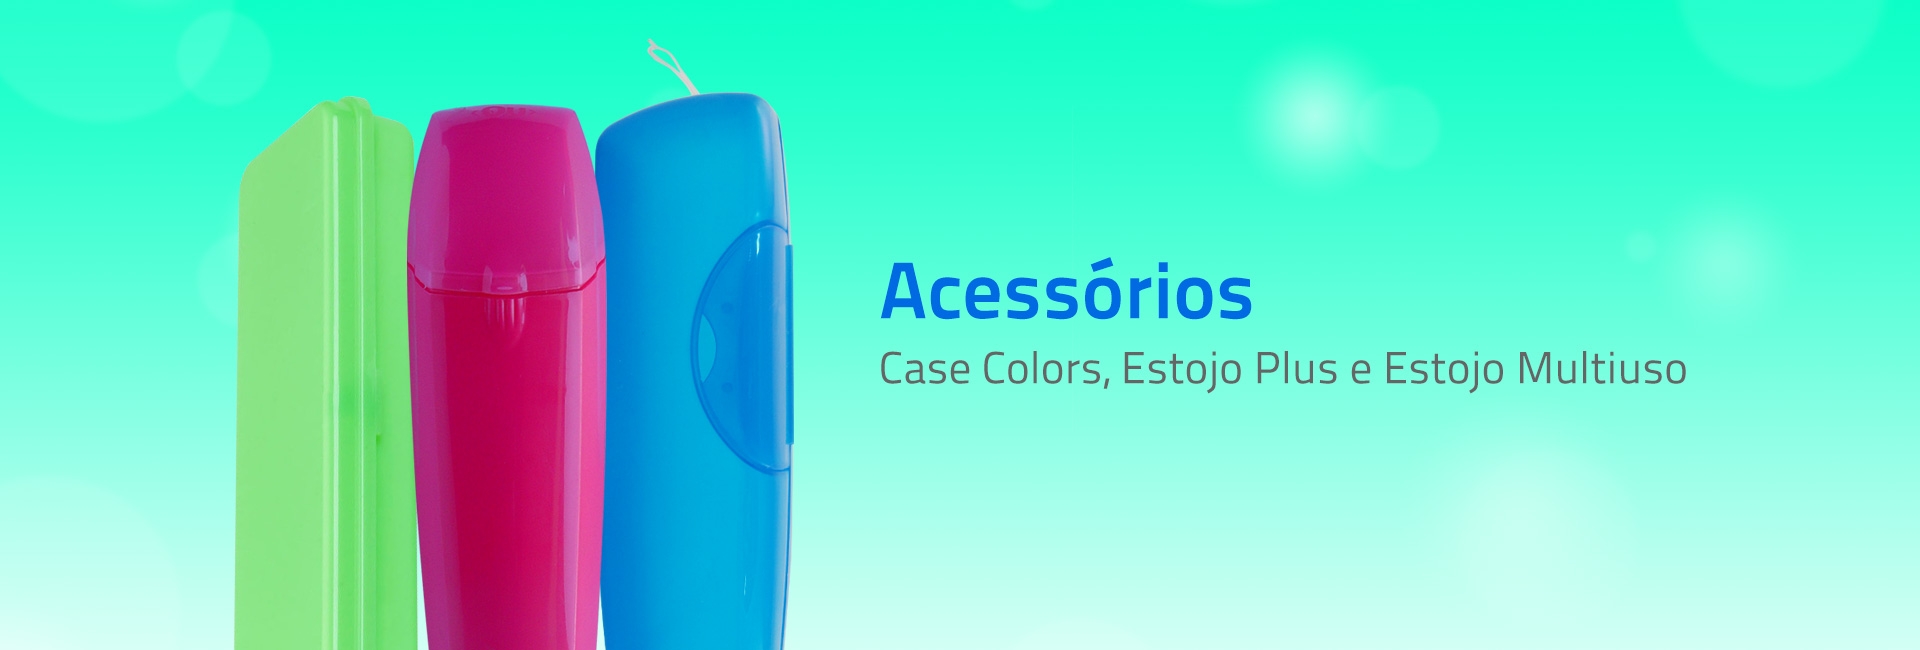 Case Colors